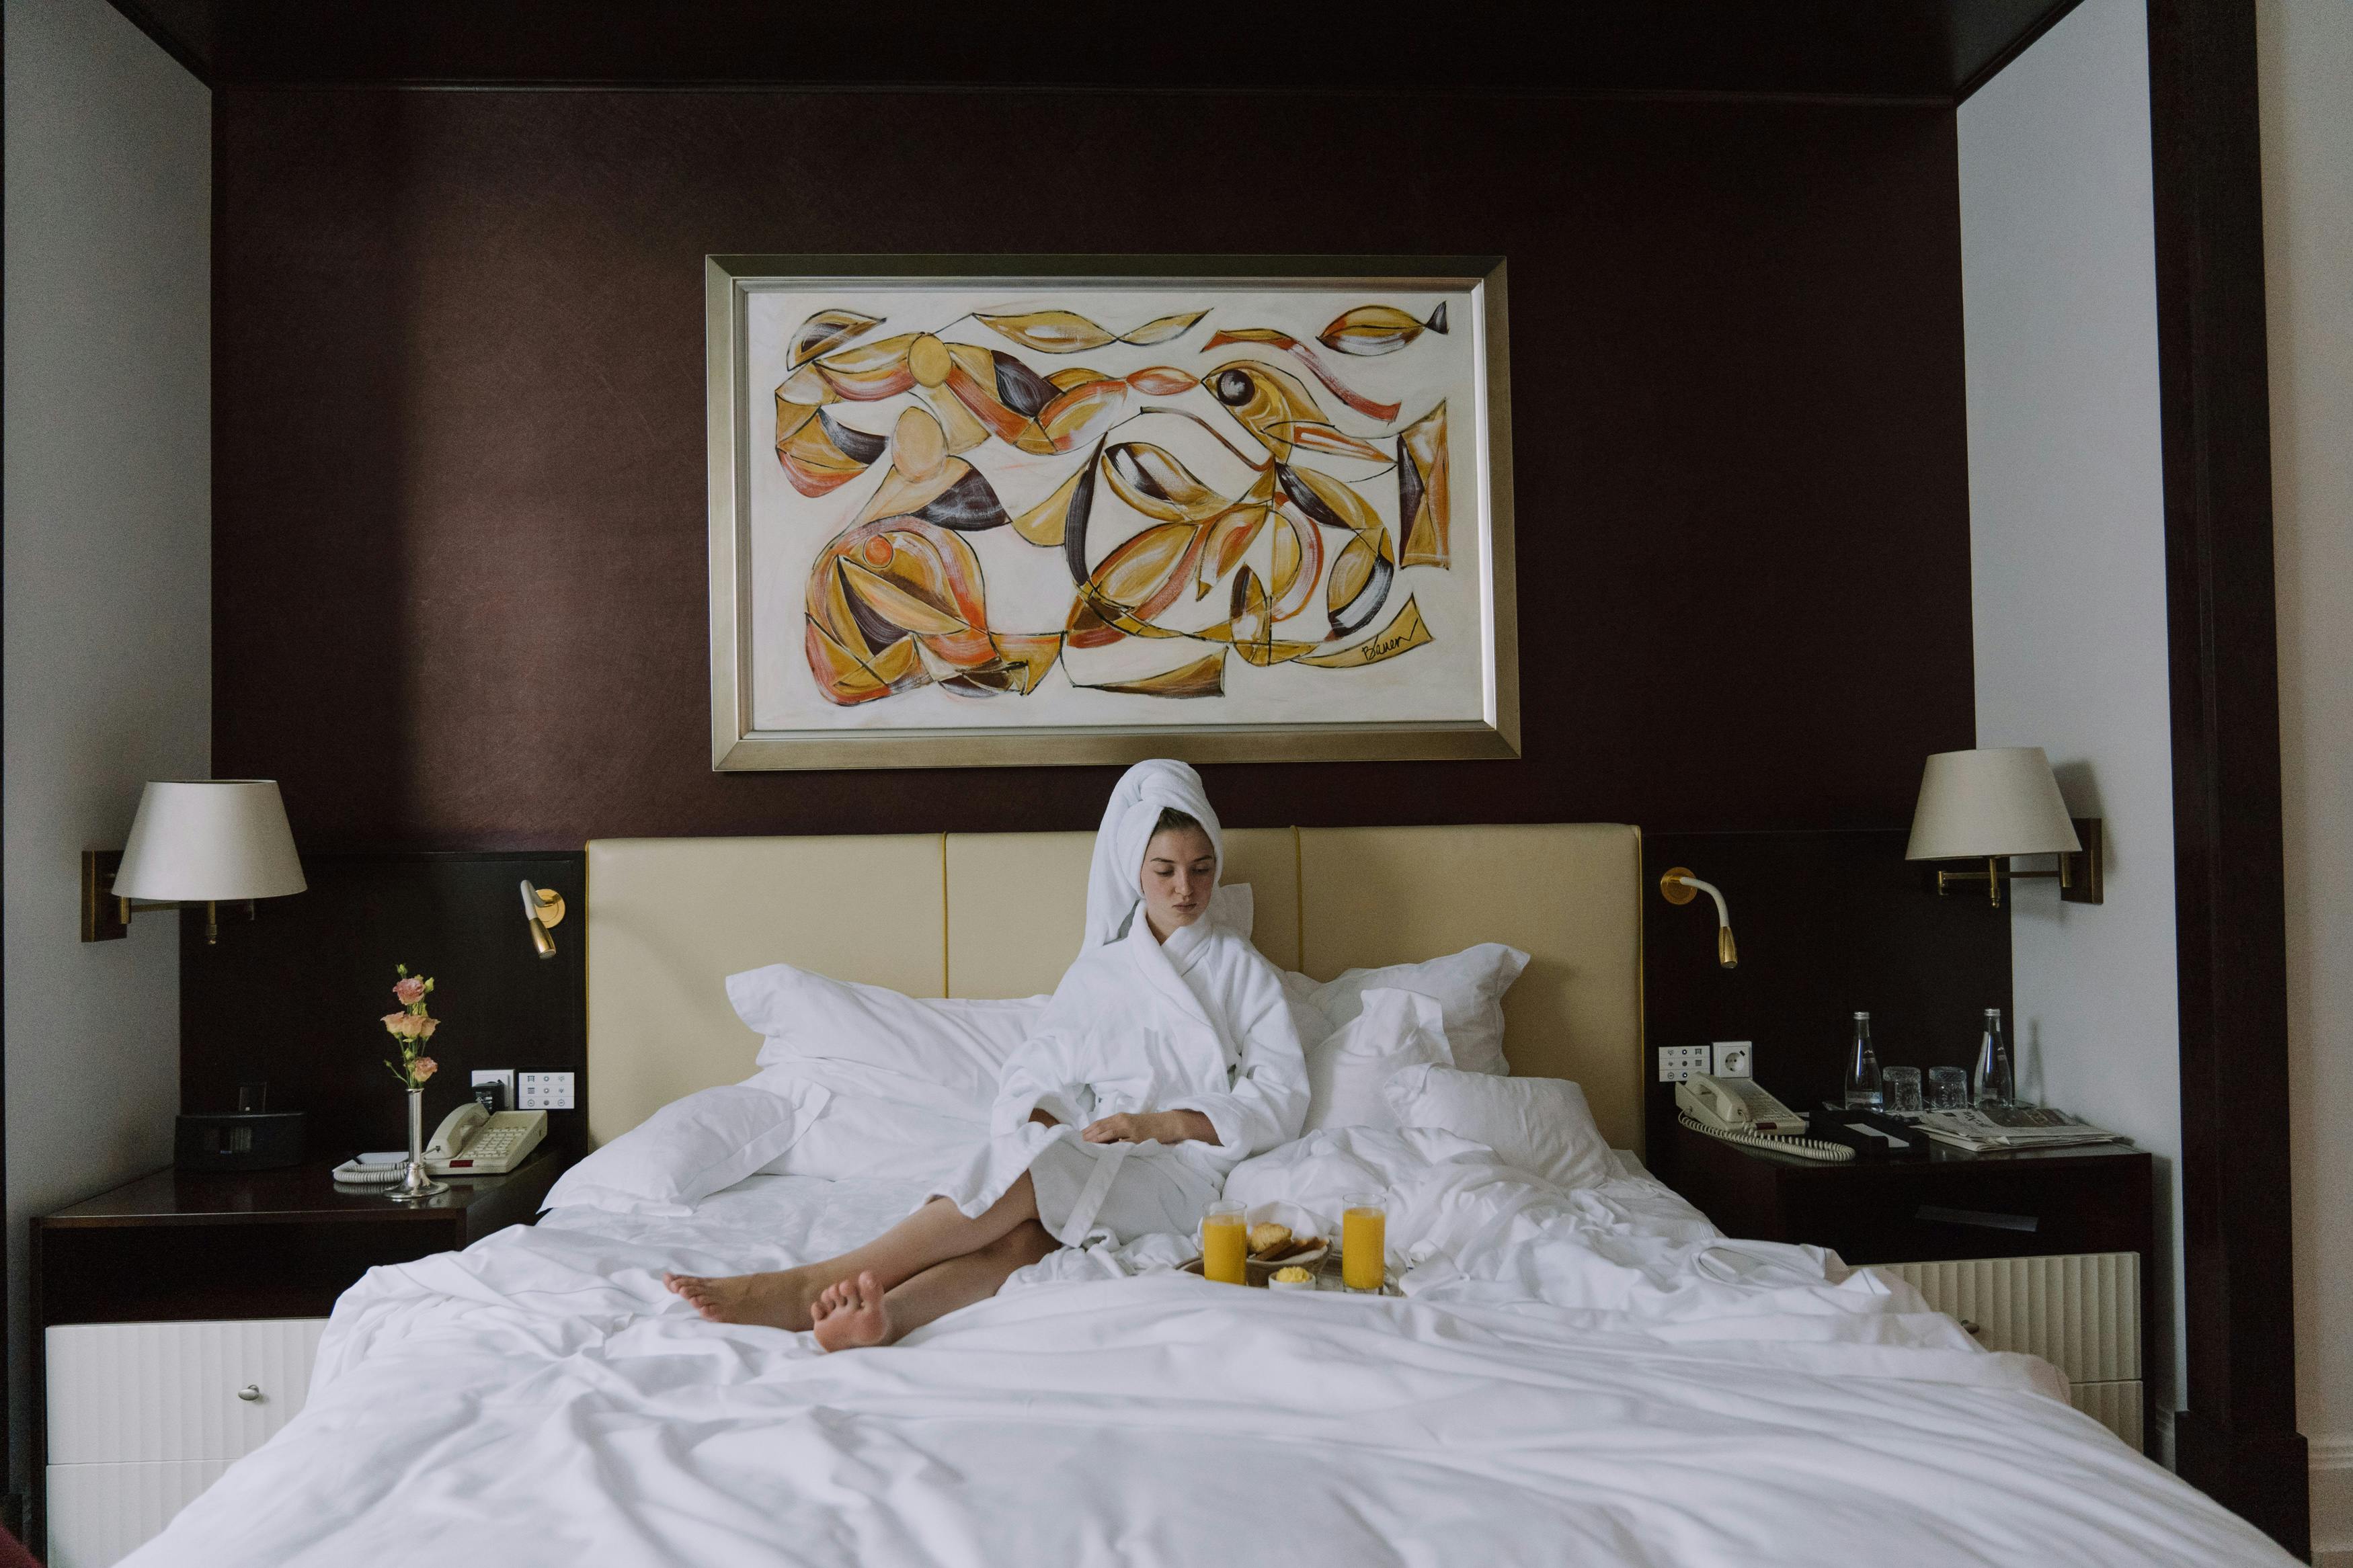 Una mujer alterada sentada en la cama de una habitación de hotel en albornoz | Fuente: Pexels